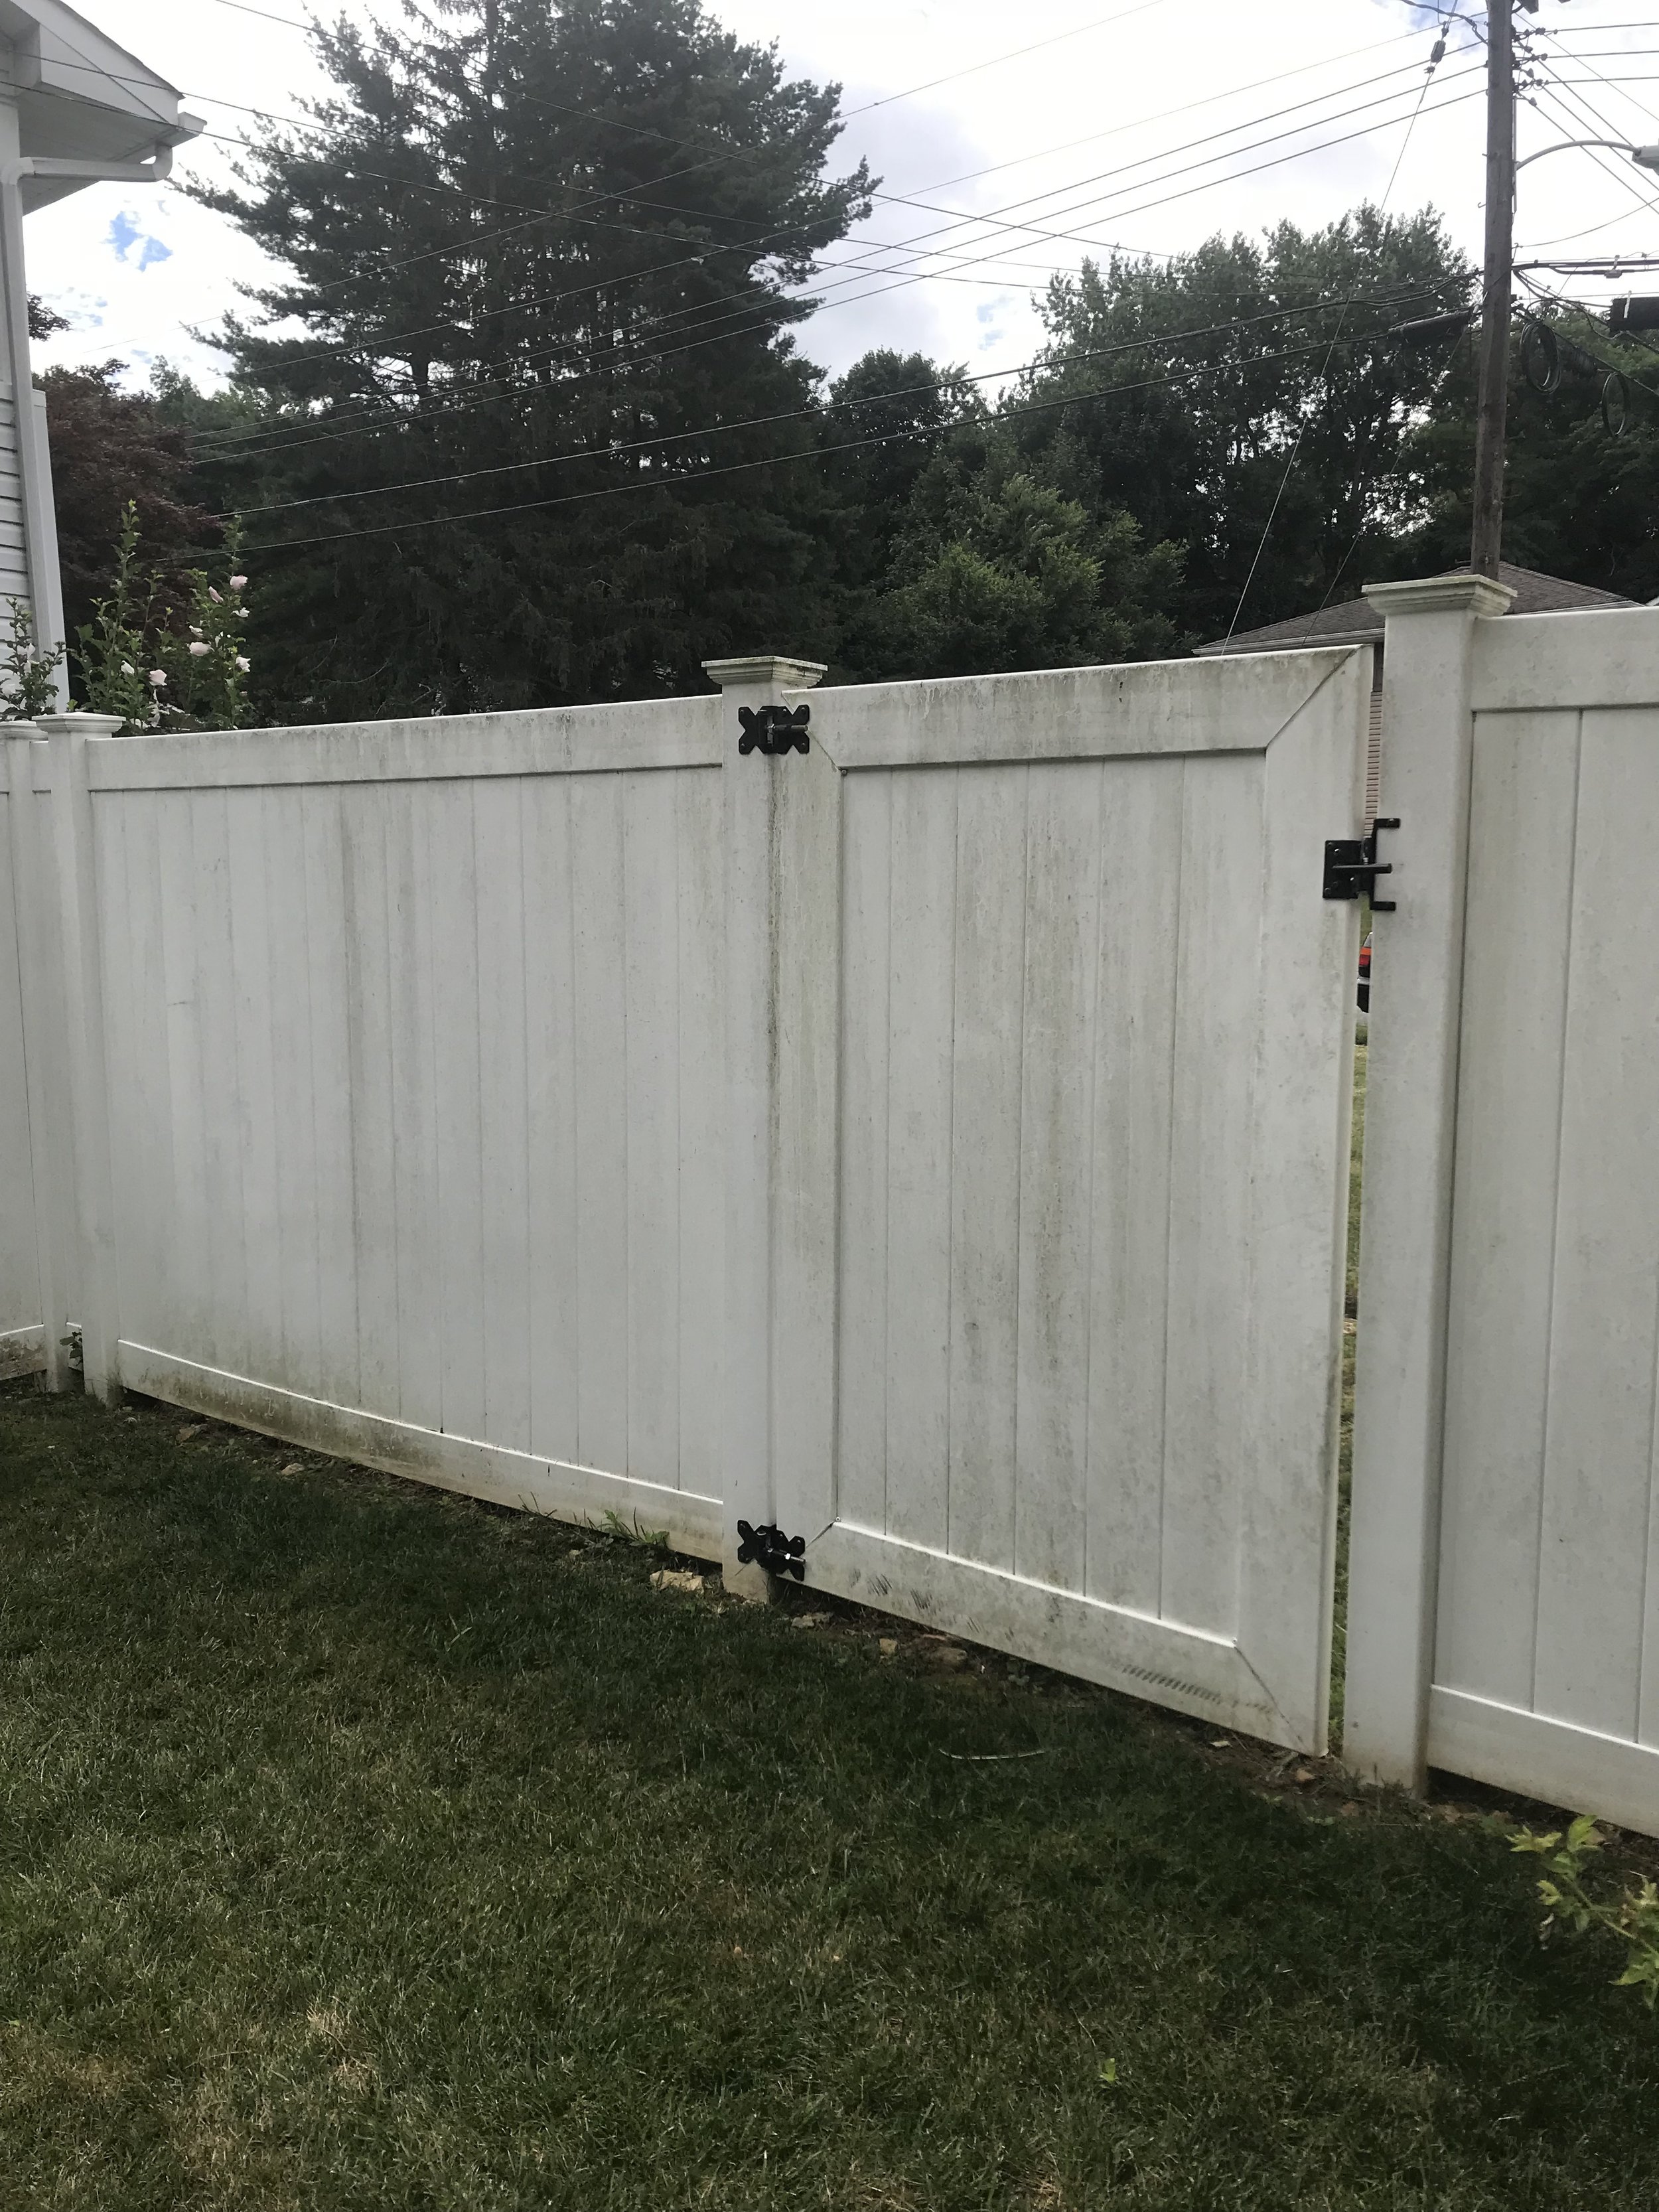 Vinyl fence mildew growth